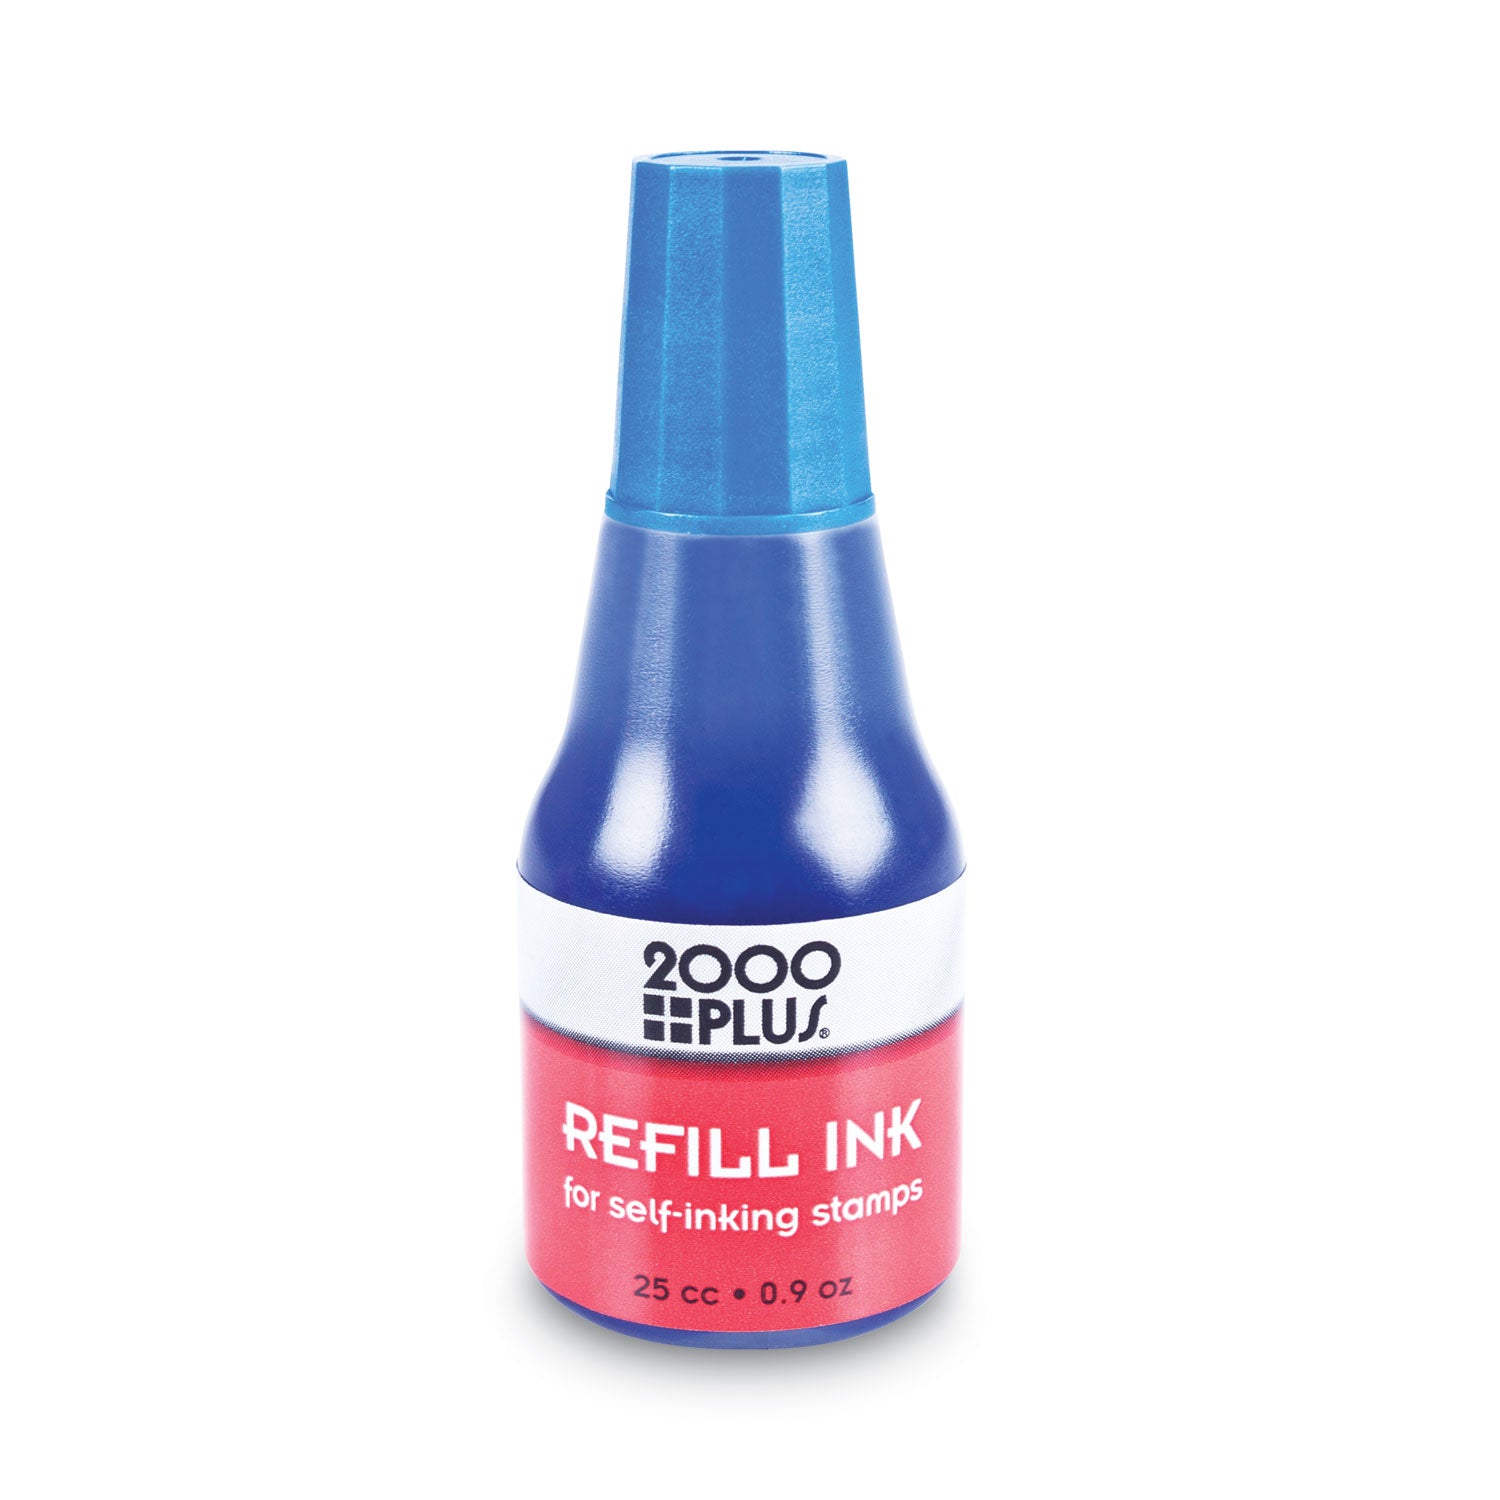 Self-Inking Refill Ink, 0.9 oz. Bottle, Blue - 